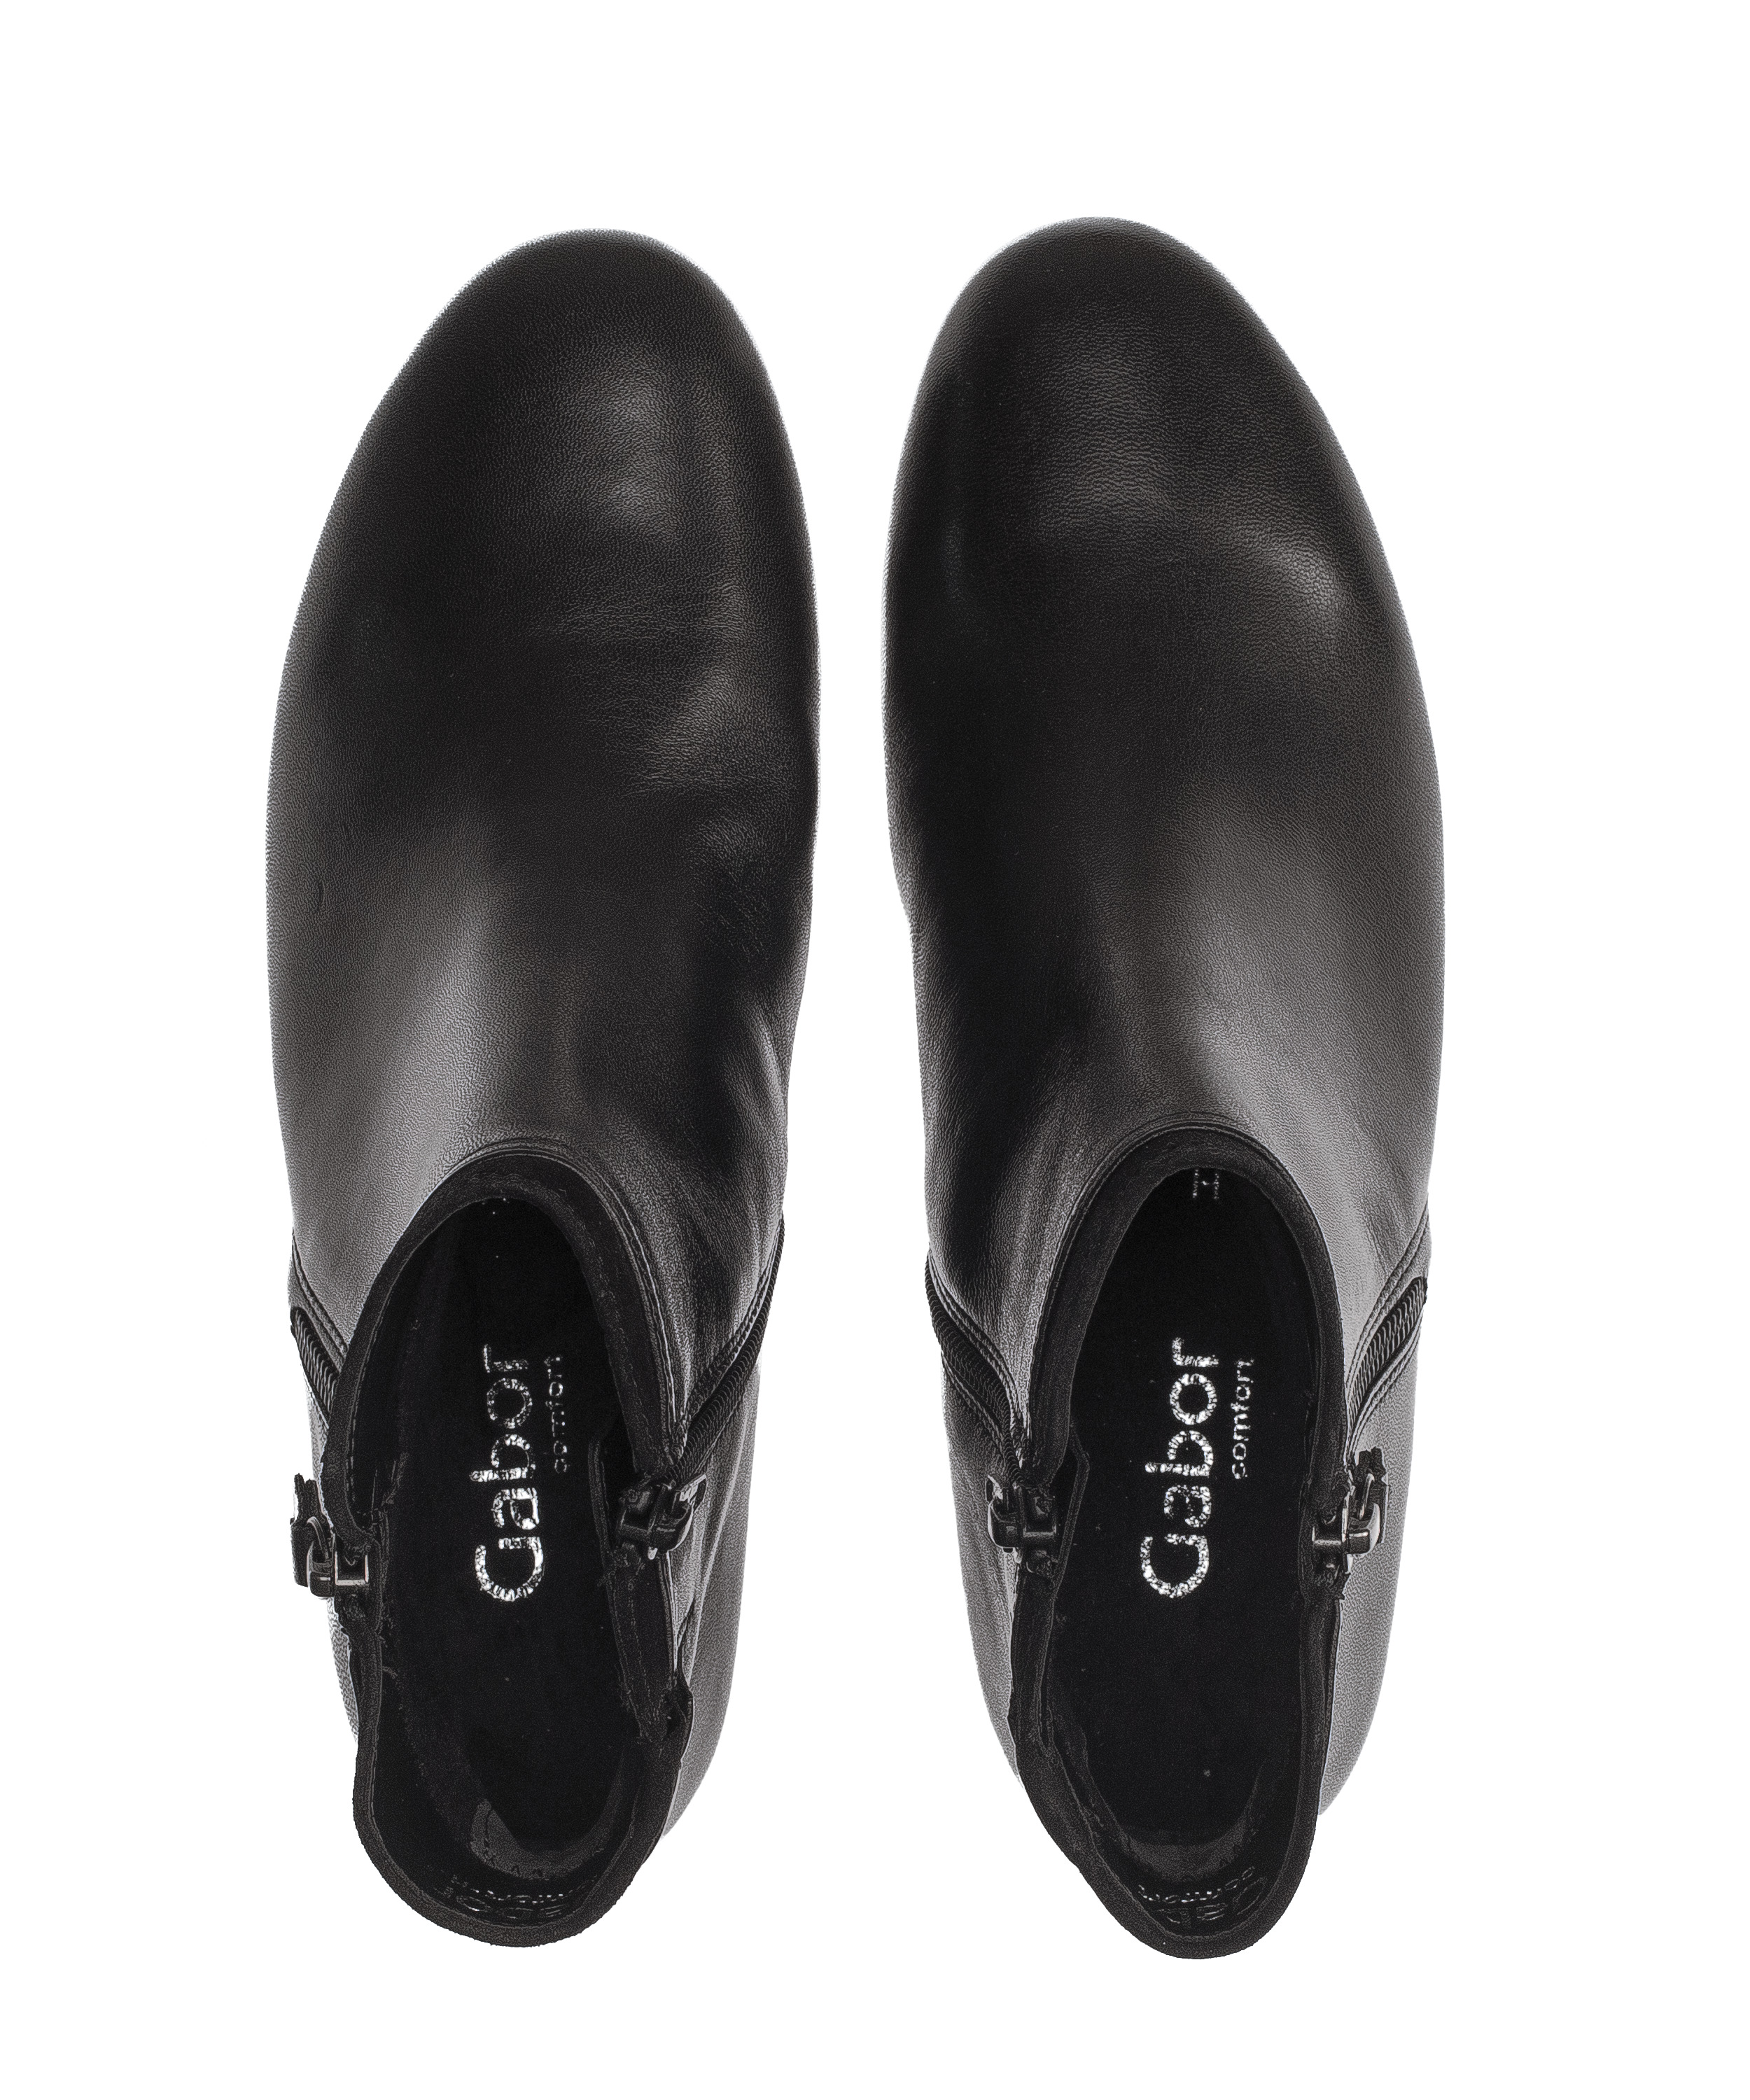 Gabor Shoes Stiefelette - Schwarz Glattleder